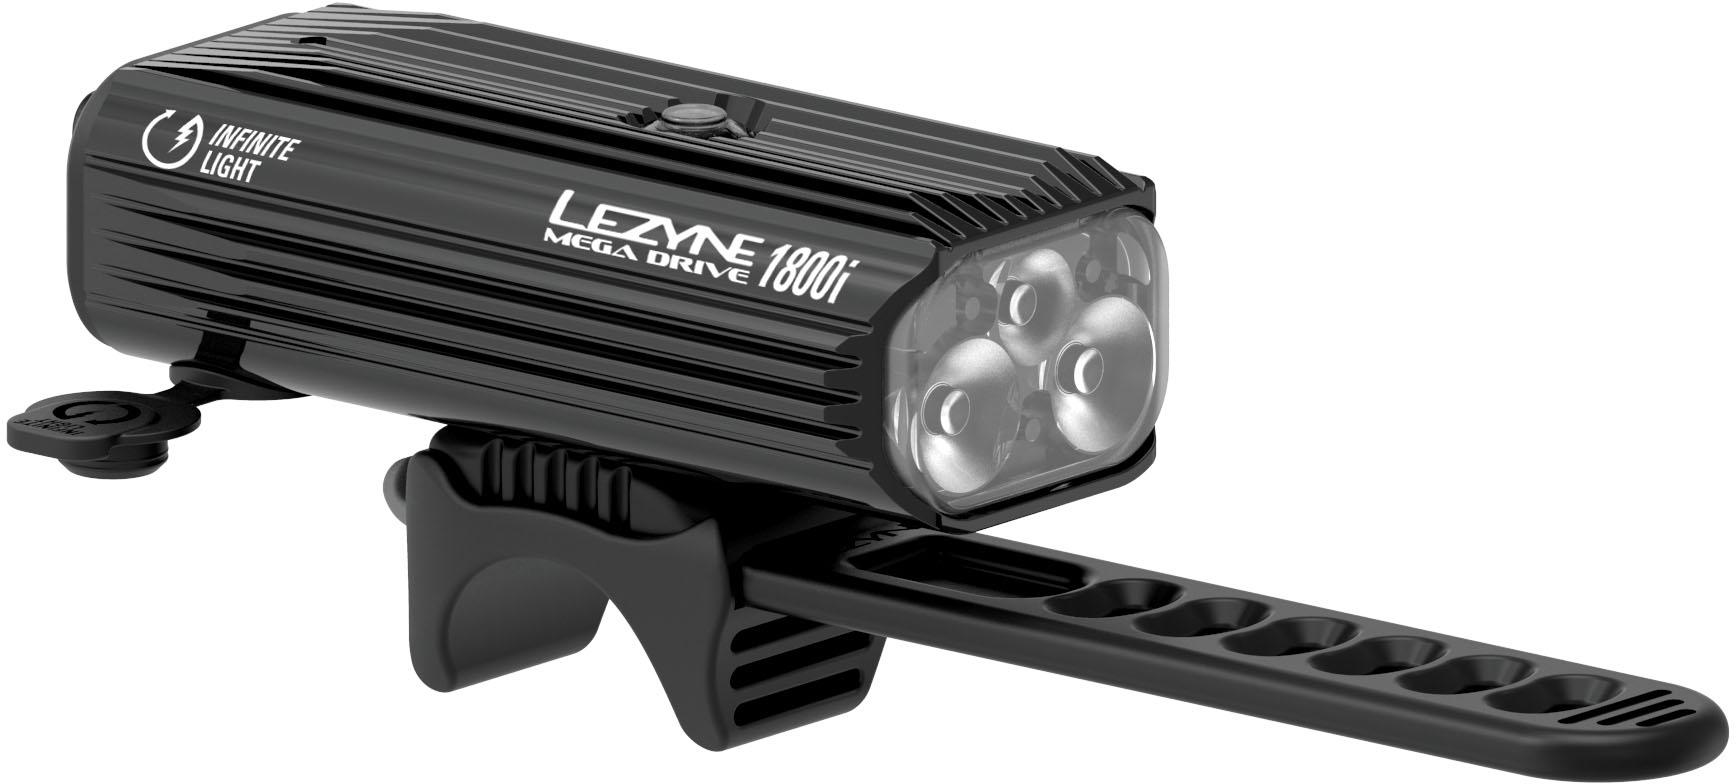 Lezyne Mega Drive 1800 Lumen Front Bike Light, Black/Hi Gloss